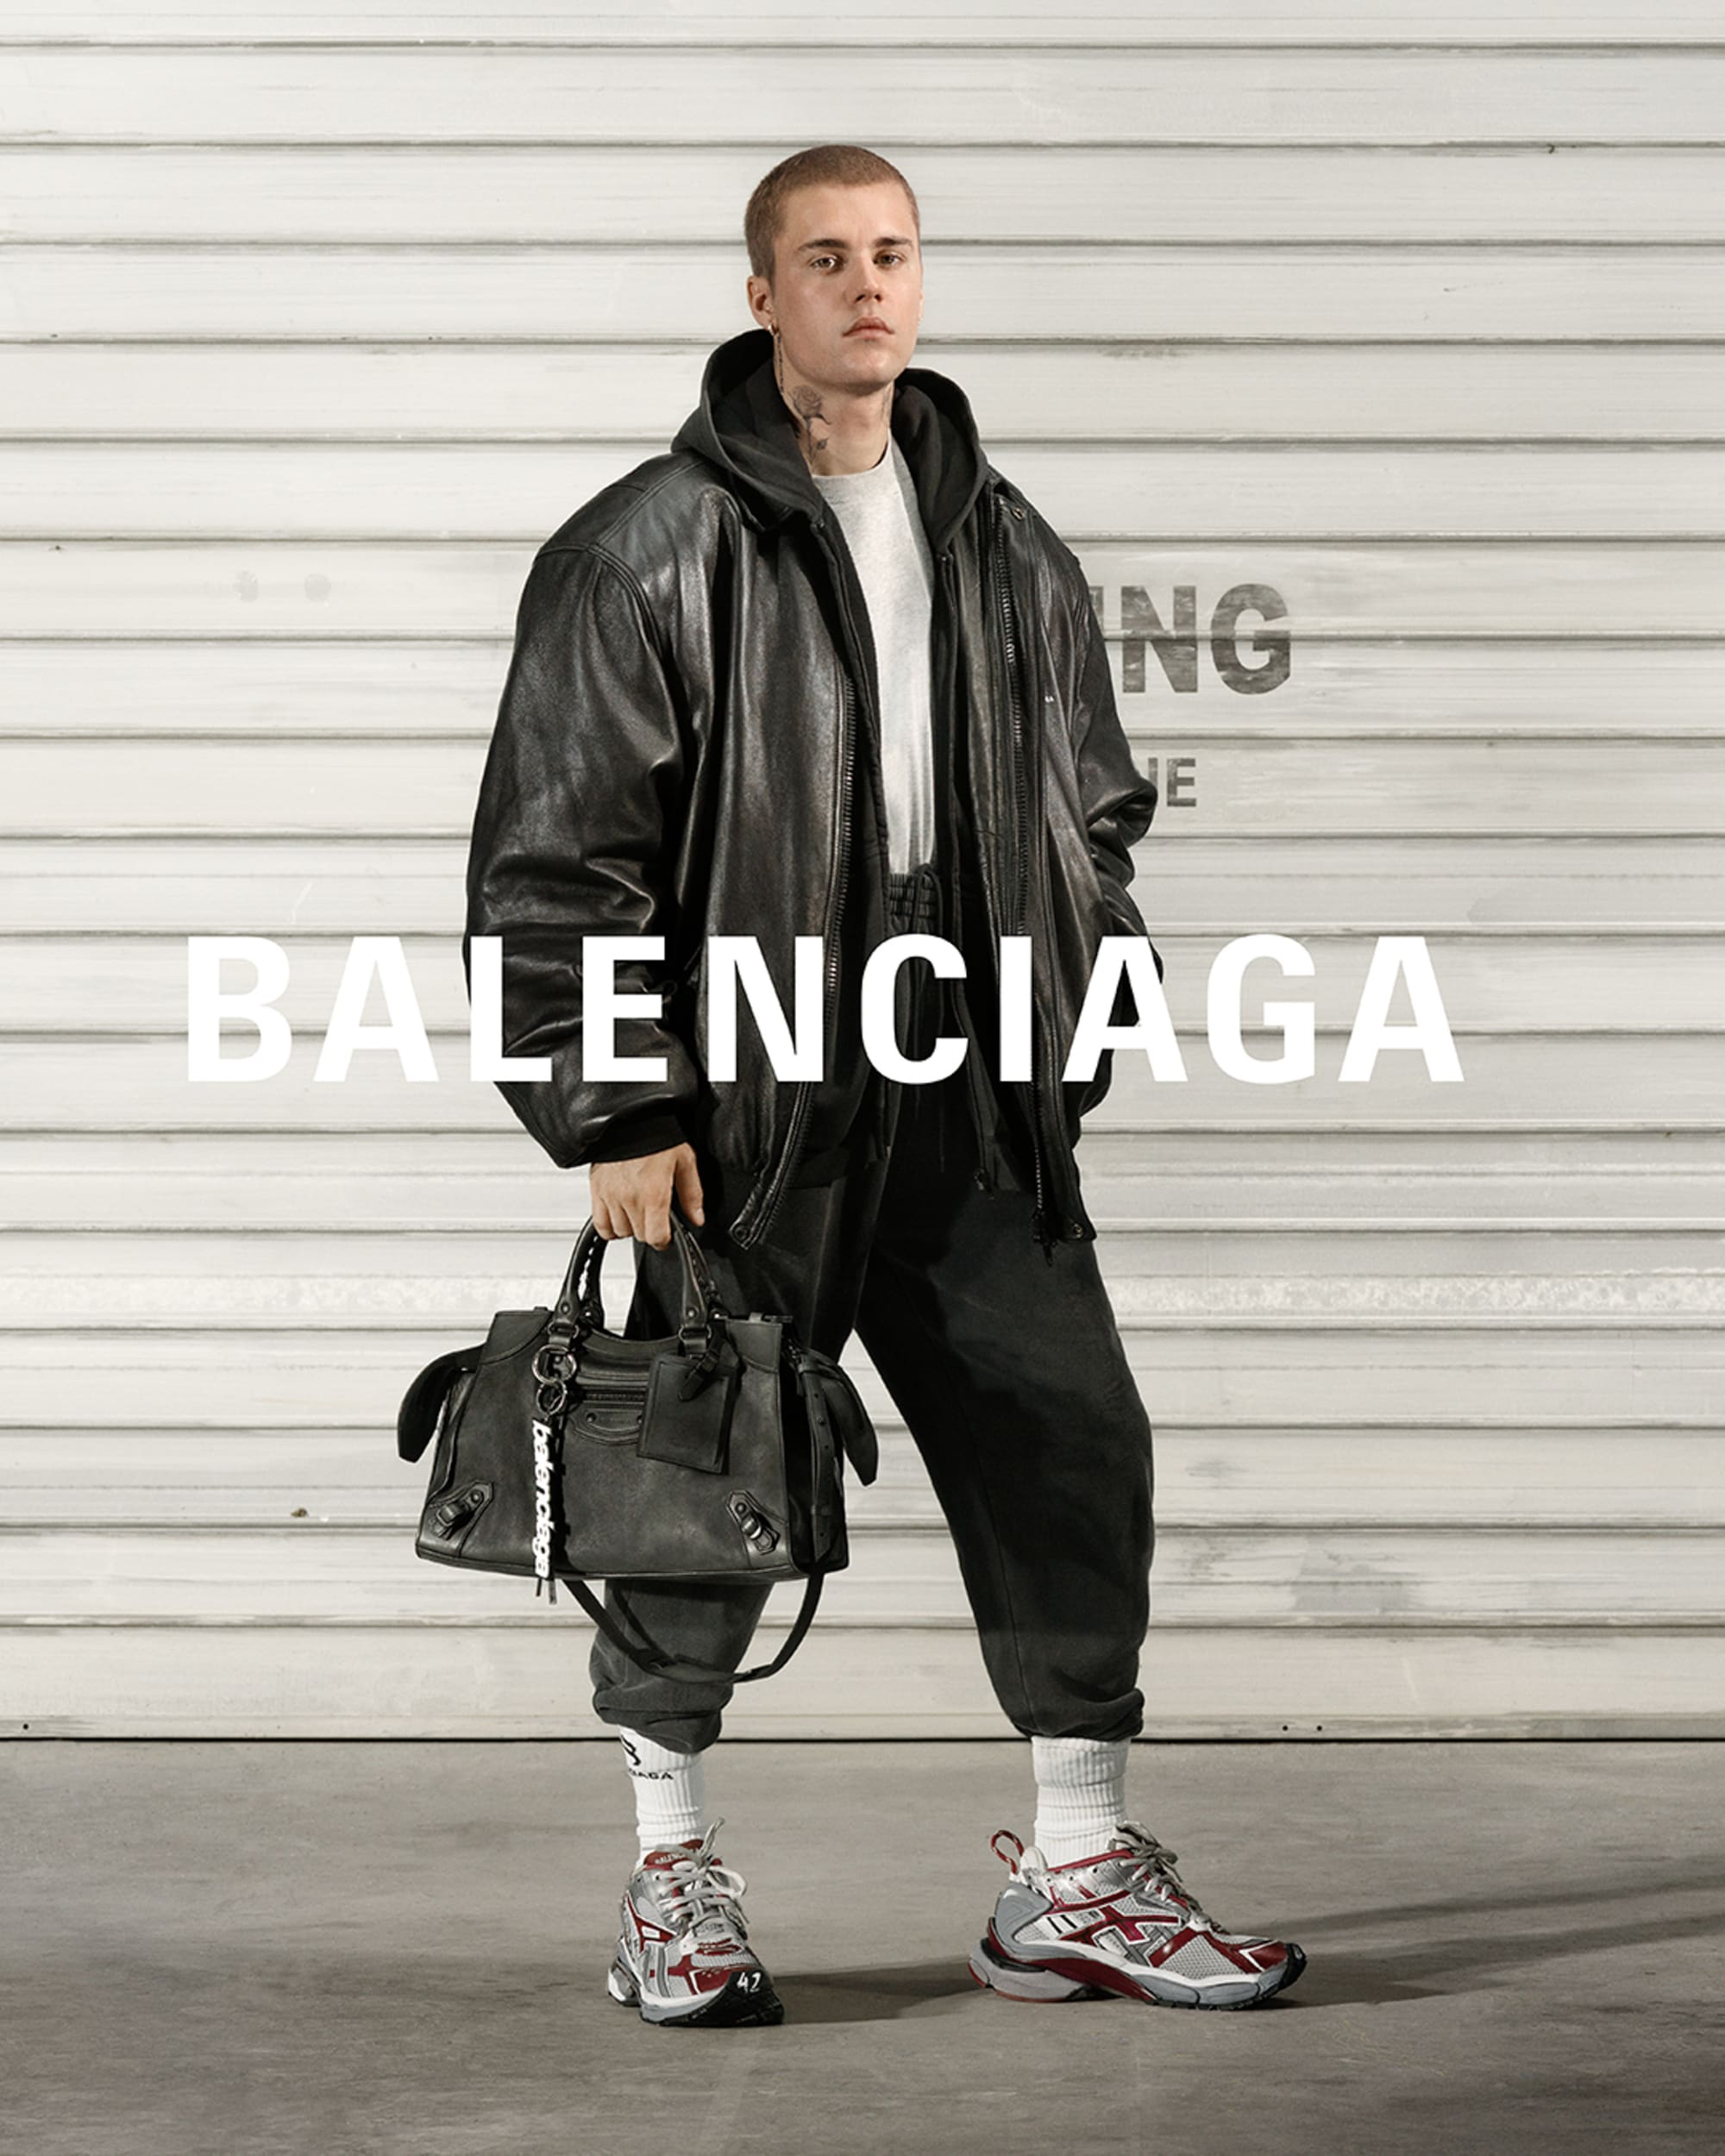 バレンシアガ」ジャスティン・ビーバーらを起用したポートレート公開、新作スニーカーを着用